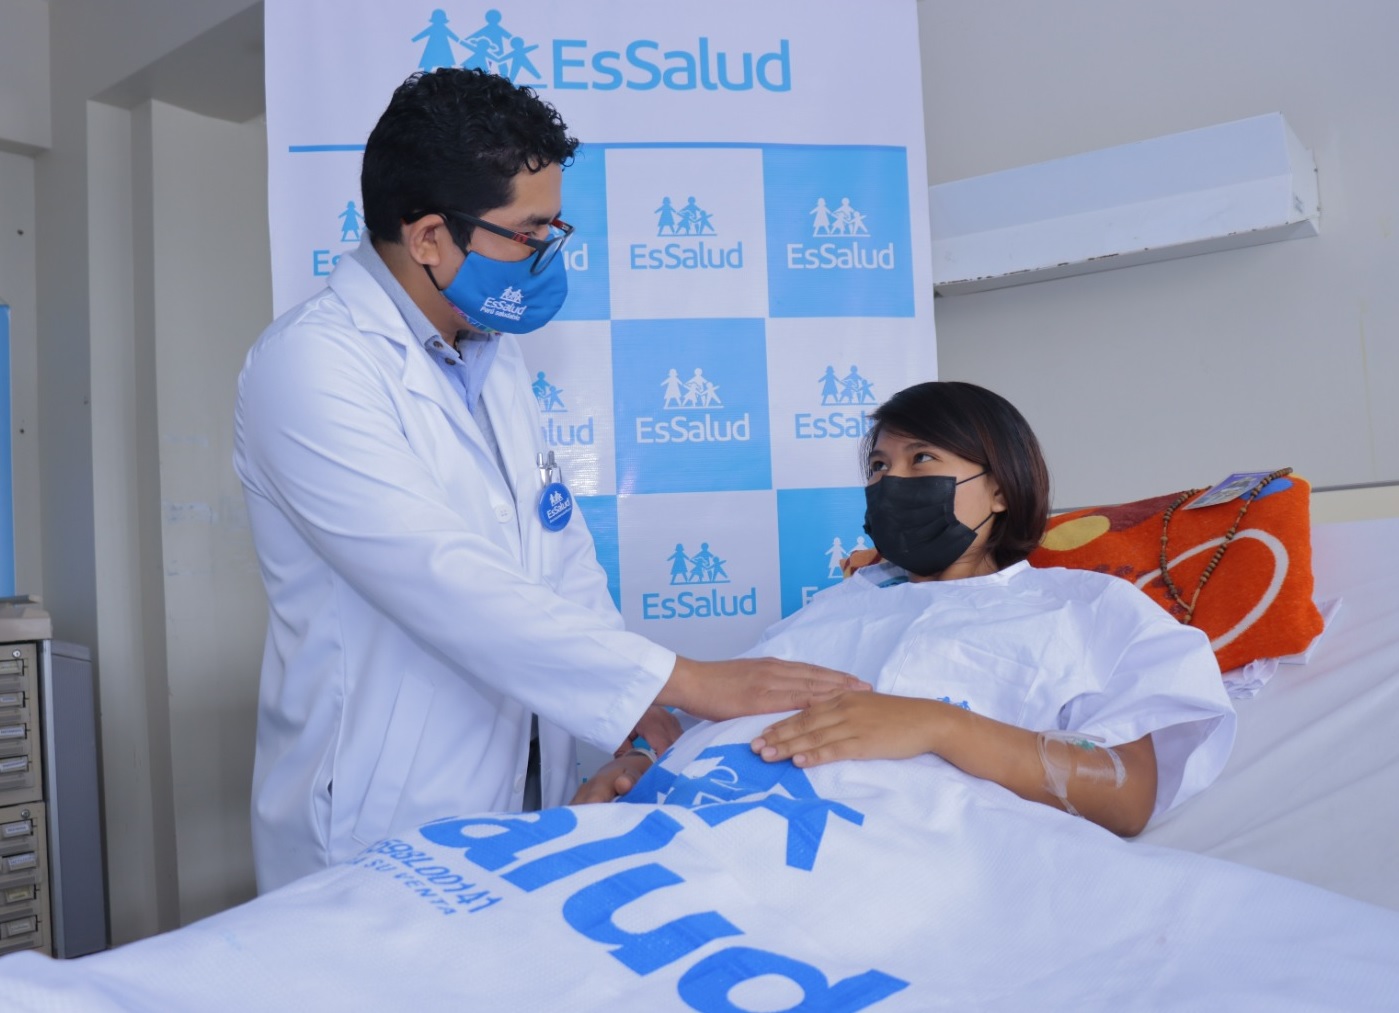 Essalud - Médicos de EsSalud Piura realiza primera cirugía fetal en el vientre materno